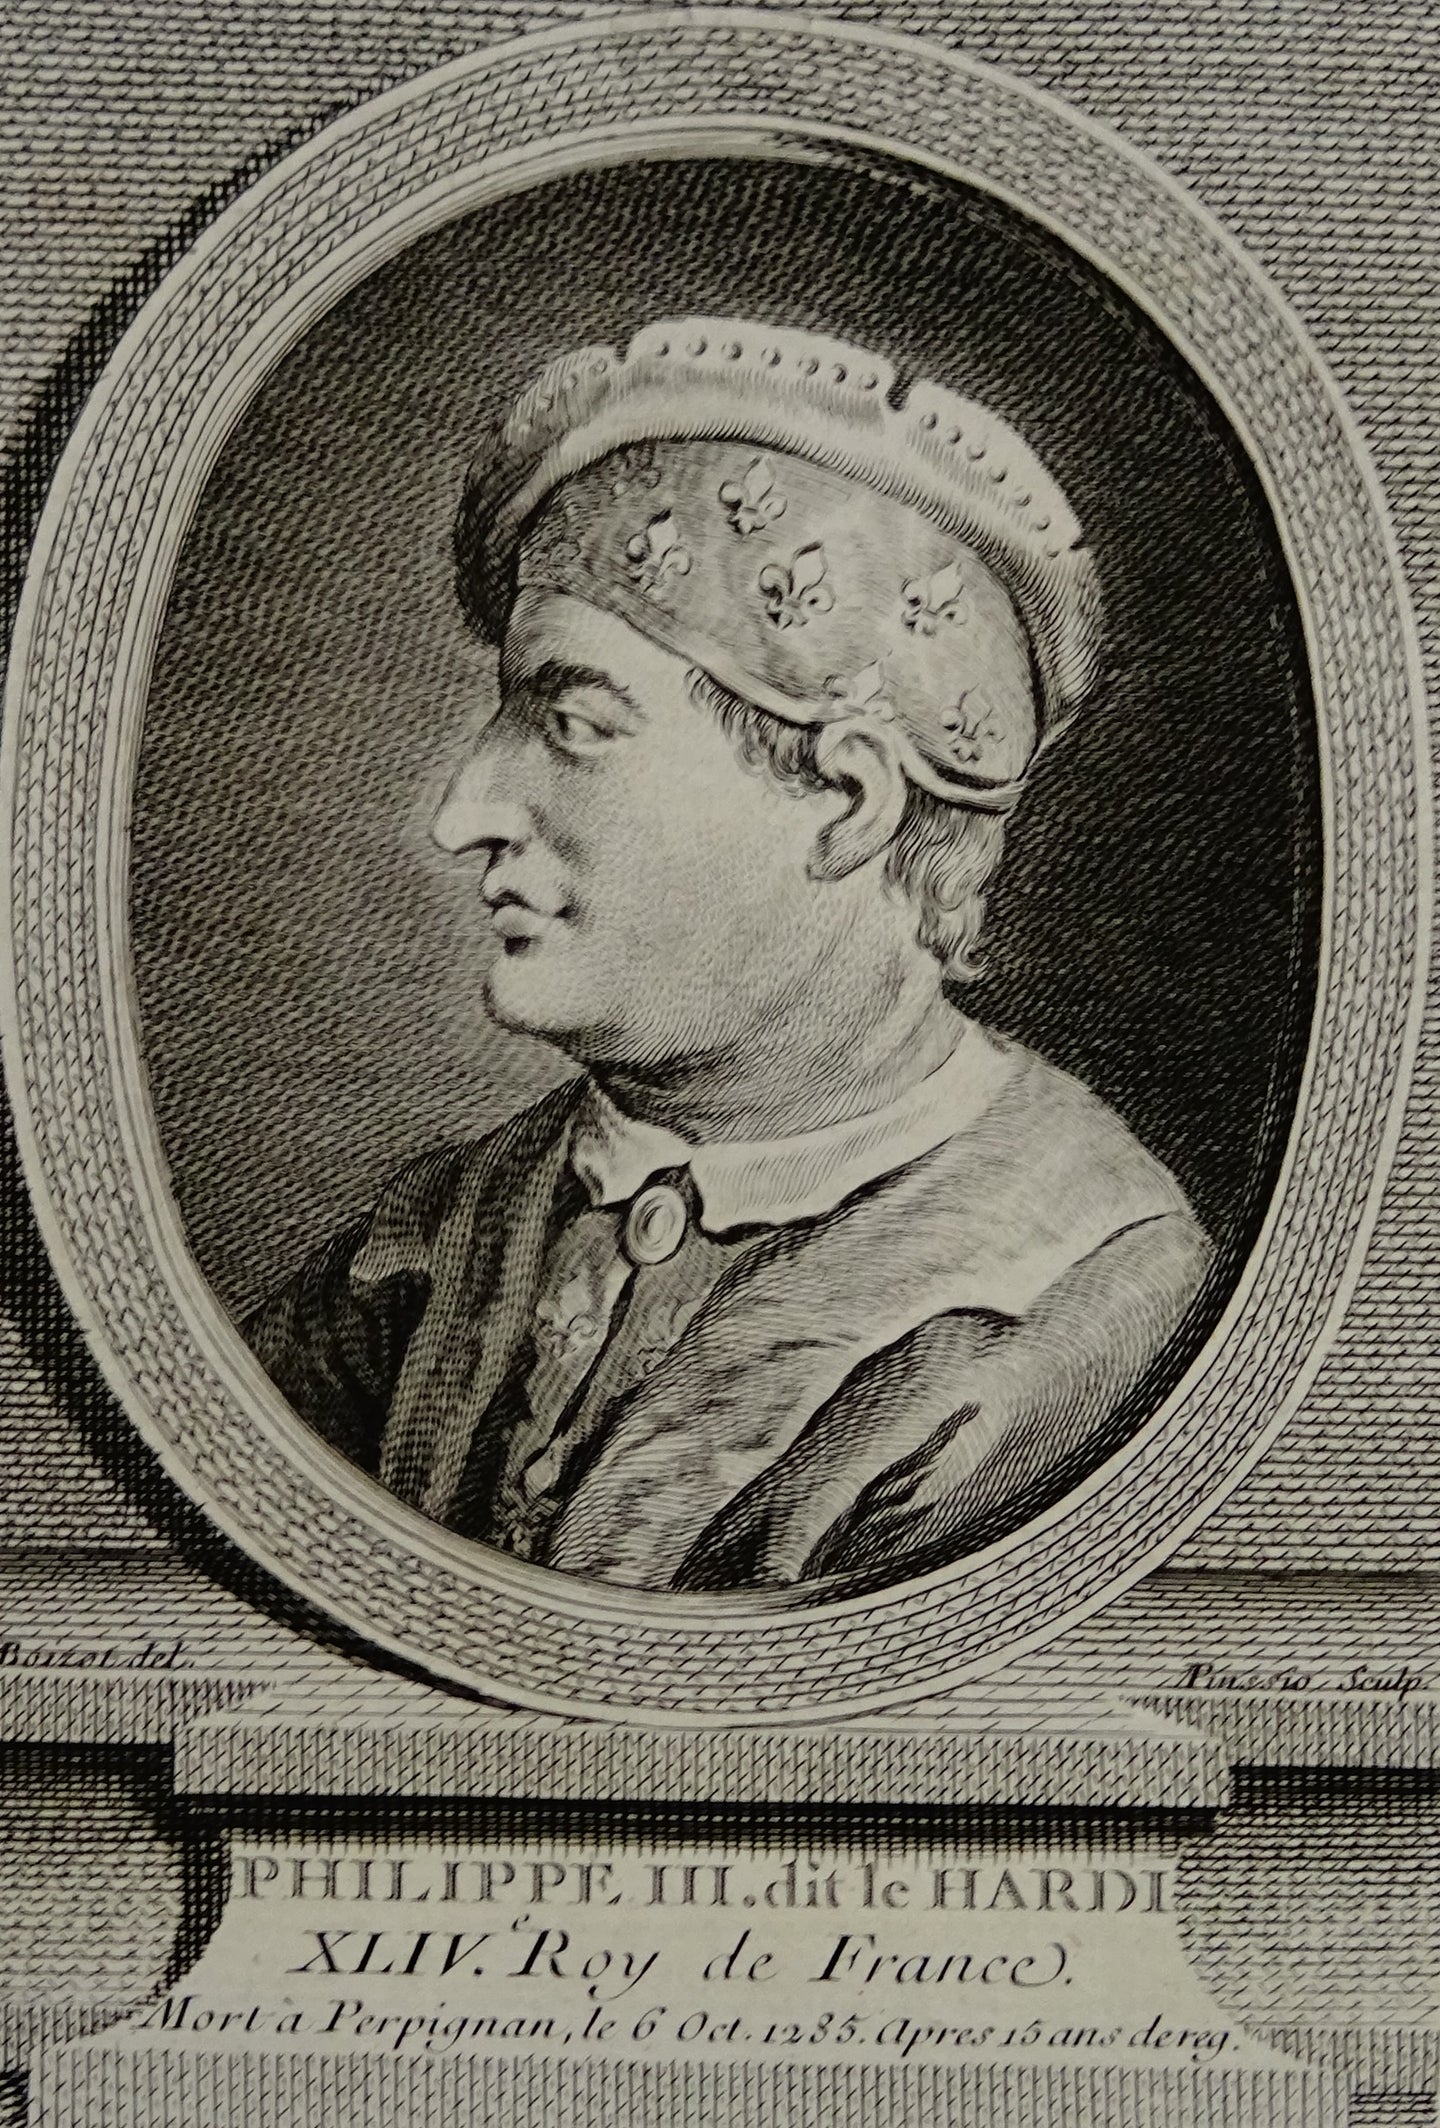 Philippe III